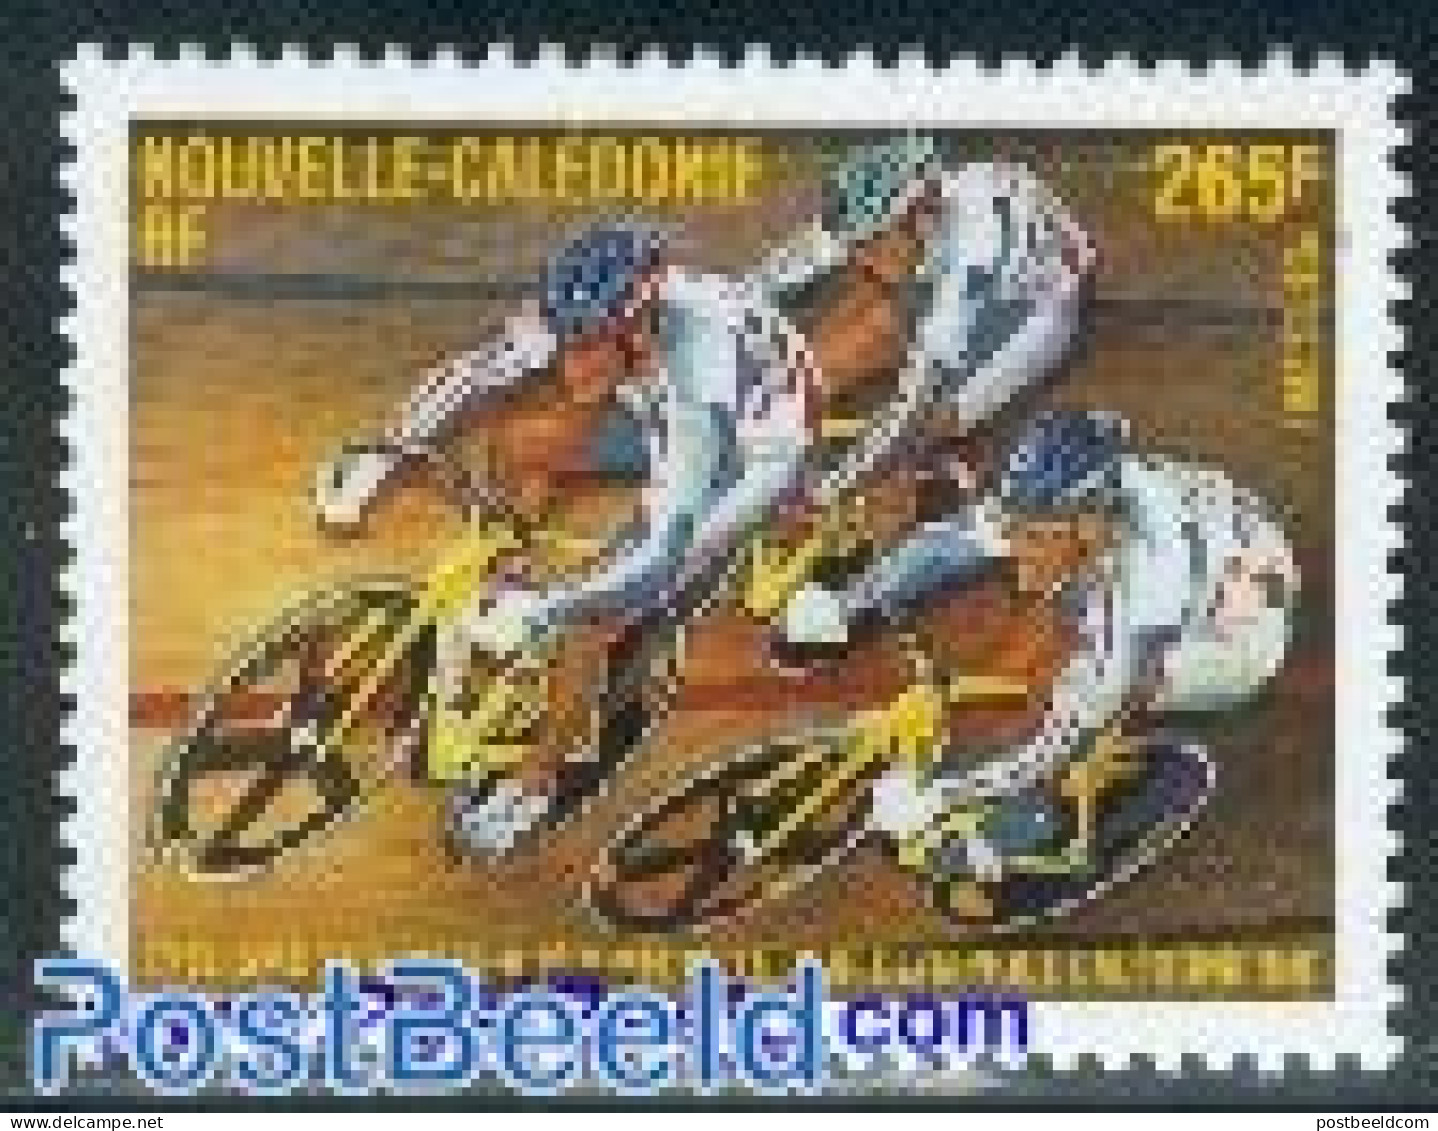 New Caledonia 2001 Cycling 1v, Mint NH, Sport - Cycling - Neufs